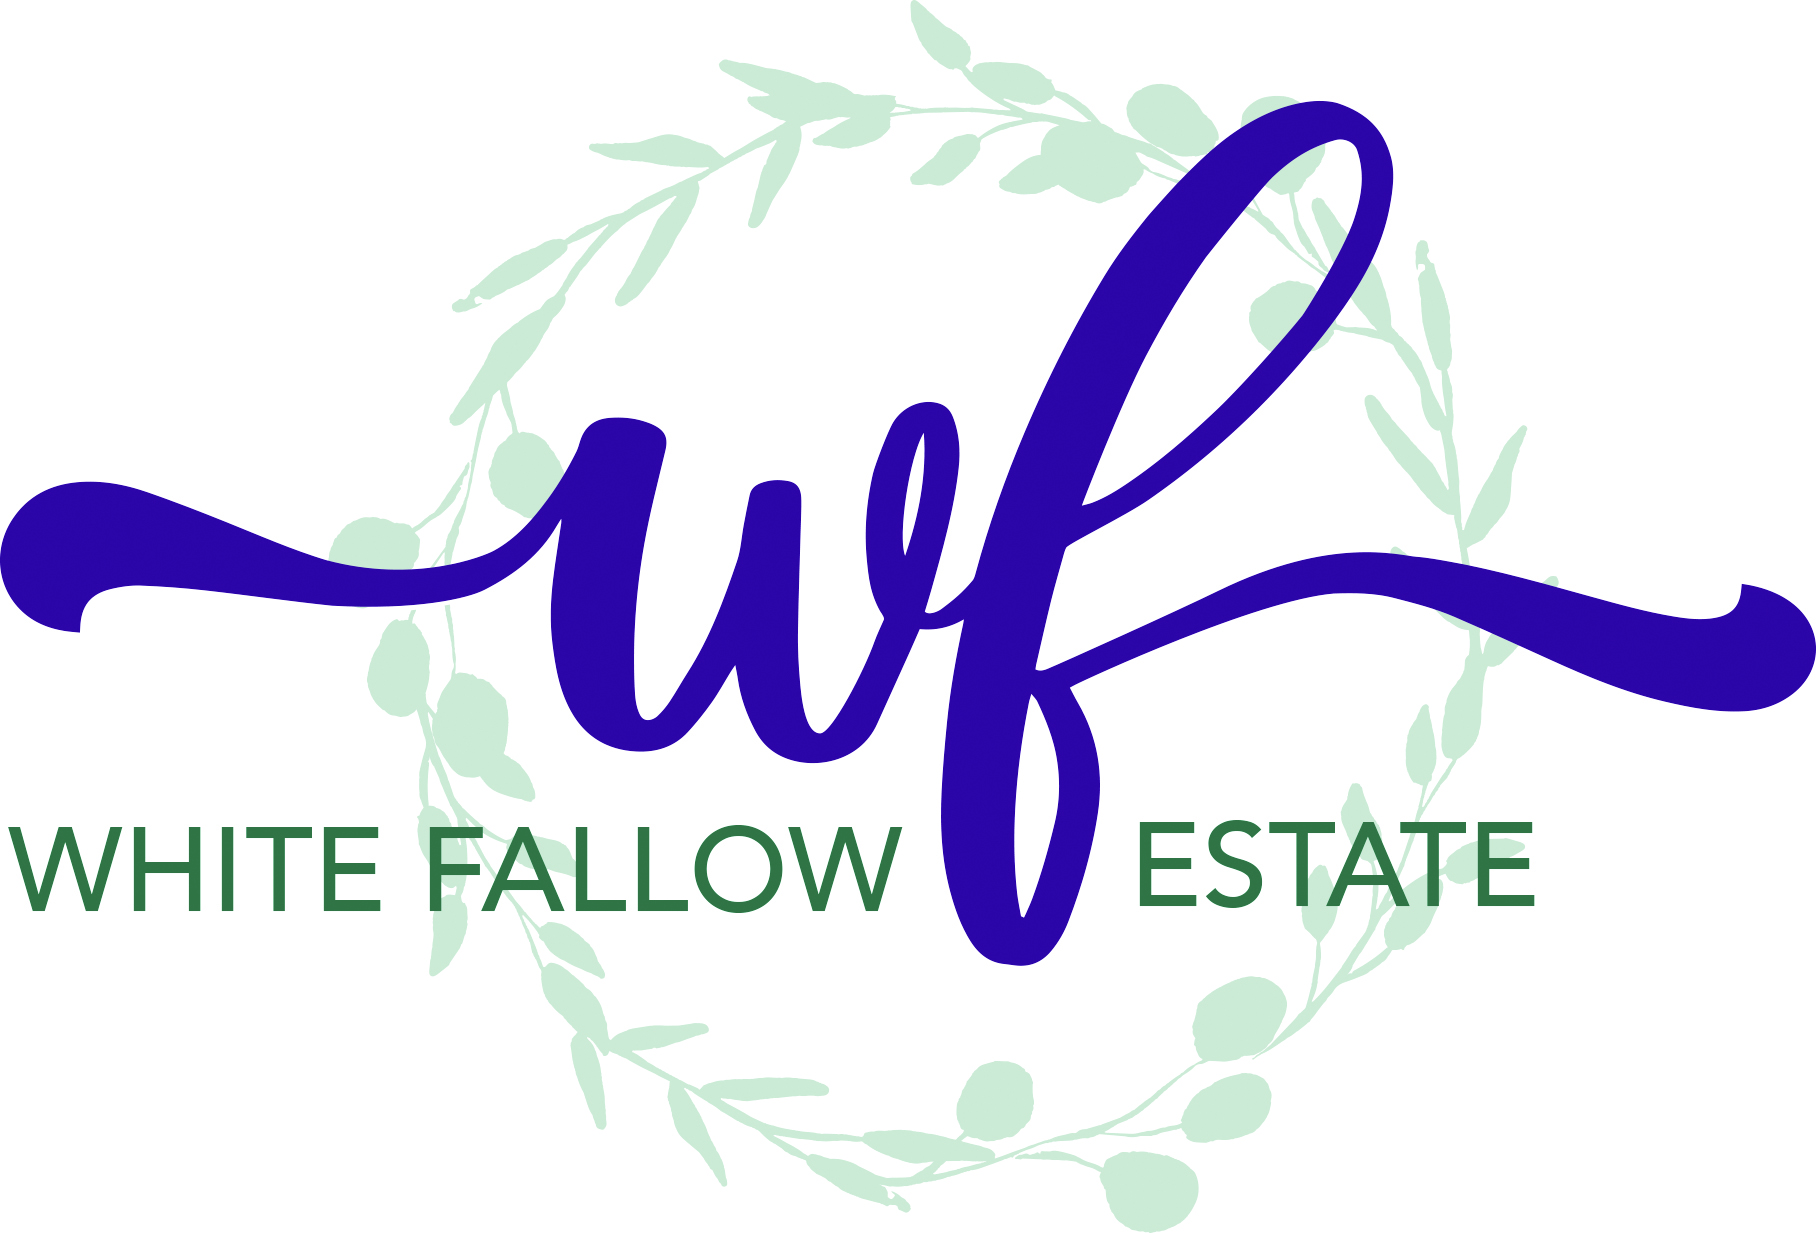 The White Fallow Estate